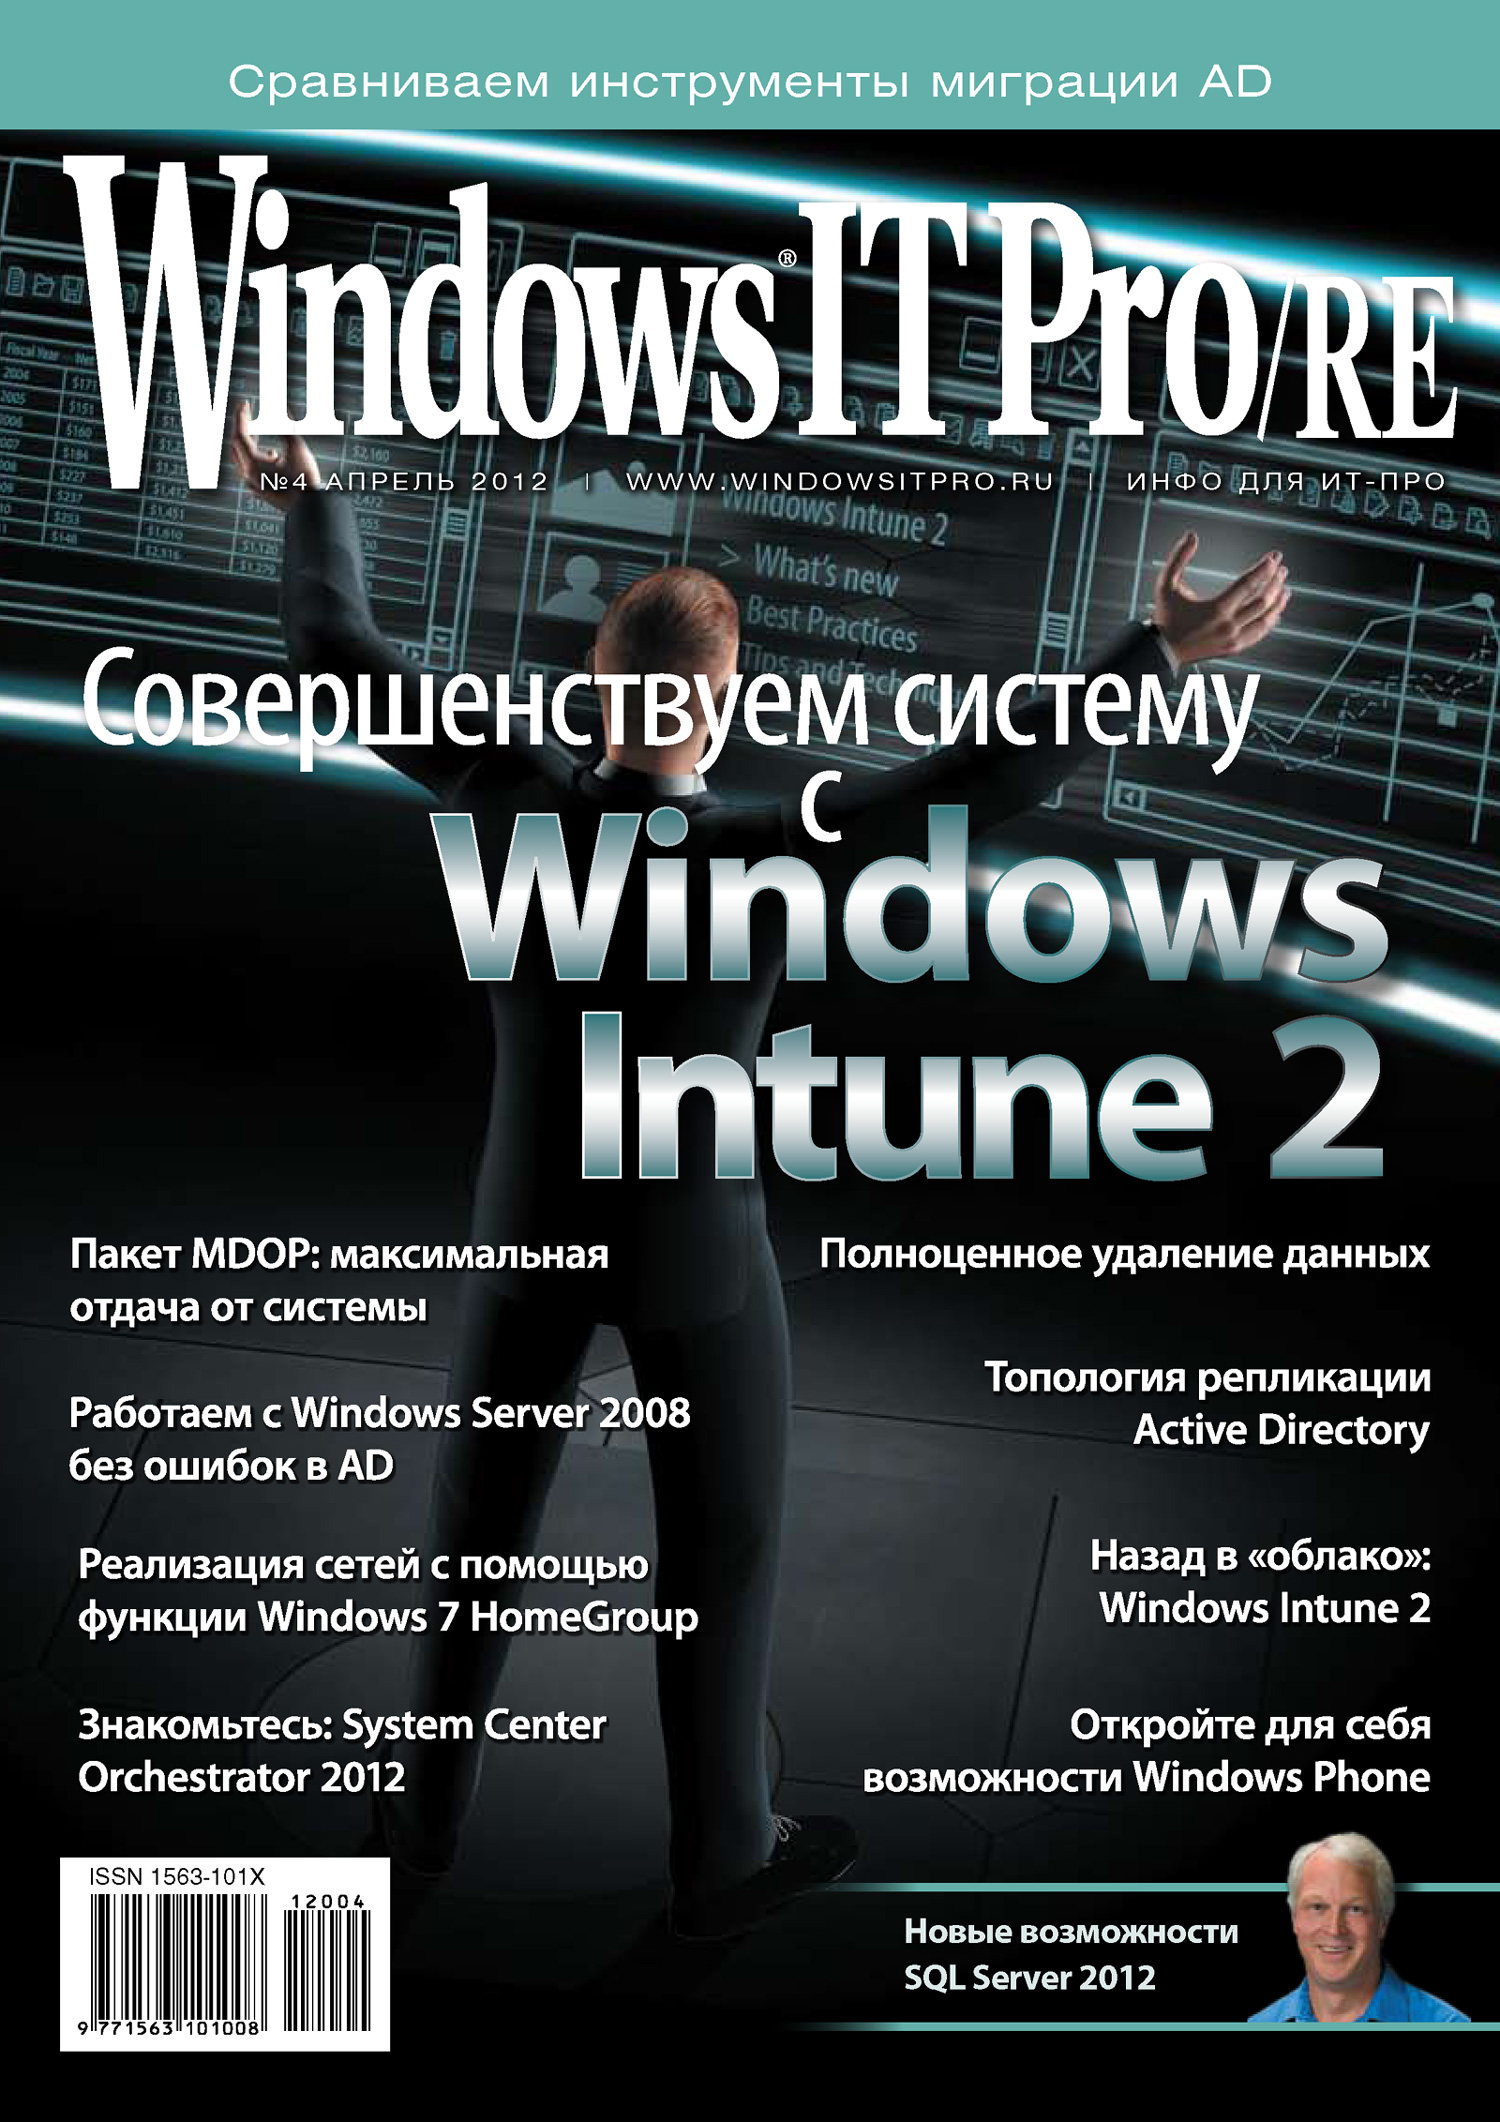 Книга Windows IT Pro 2012 Windows IT Pro/RE №04/2012 созданная Открытые системы, Открытые системы может относится к жанру компьютерные журналы, ОС и сети. Стоимость электронной книги Windows IT Pro/RE №04/2012 с идентификатором 3021055 составляет 484.00 руб.